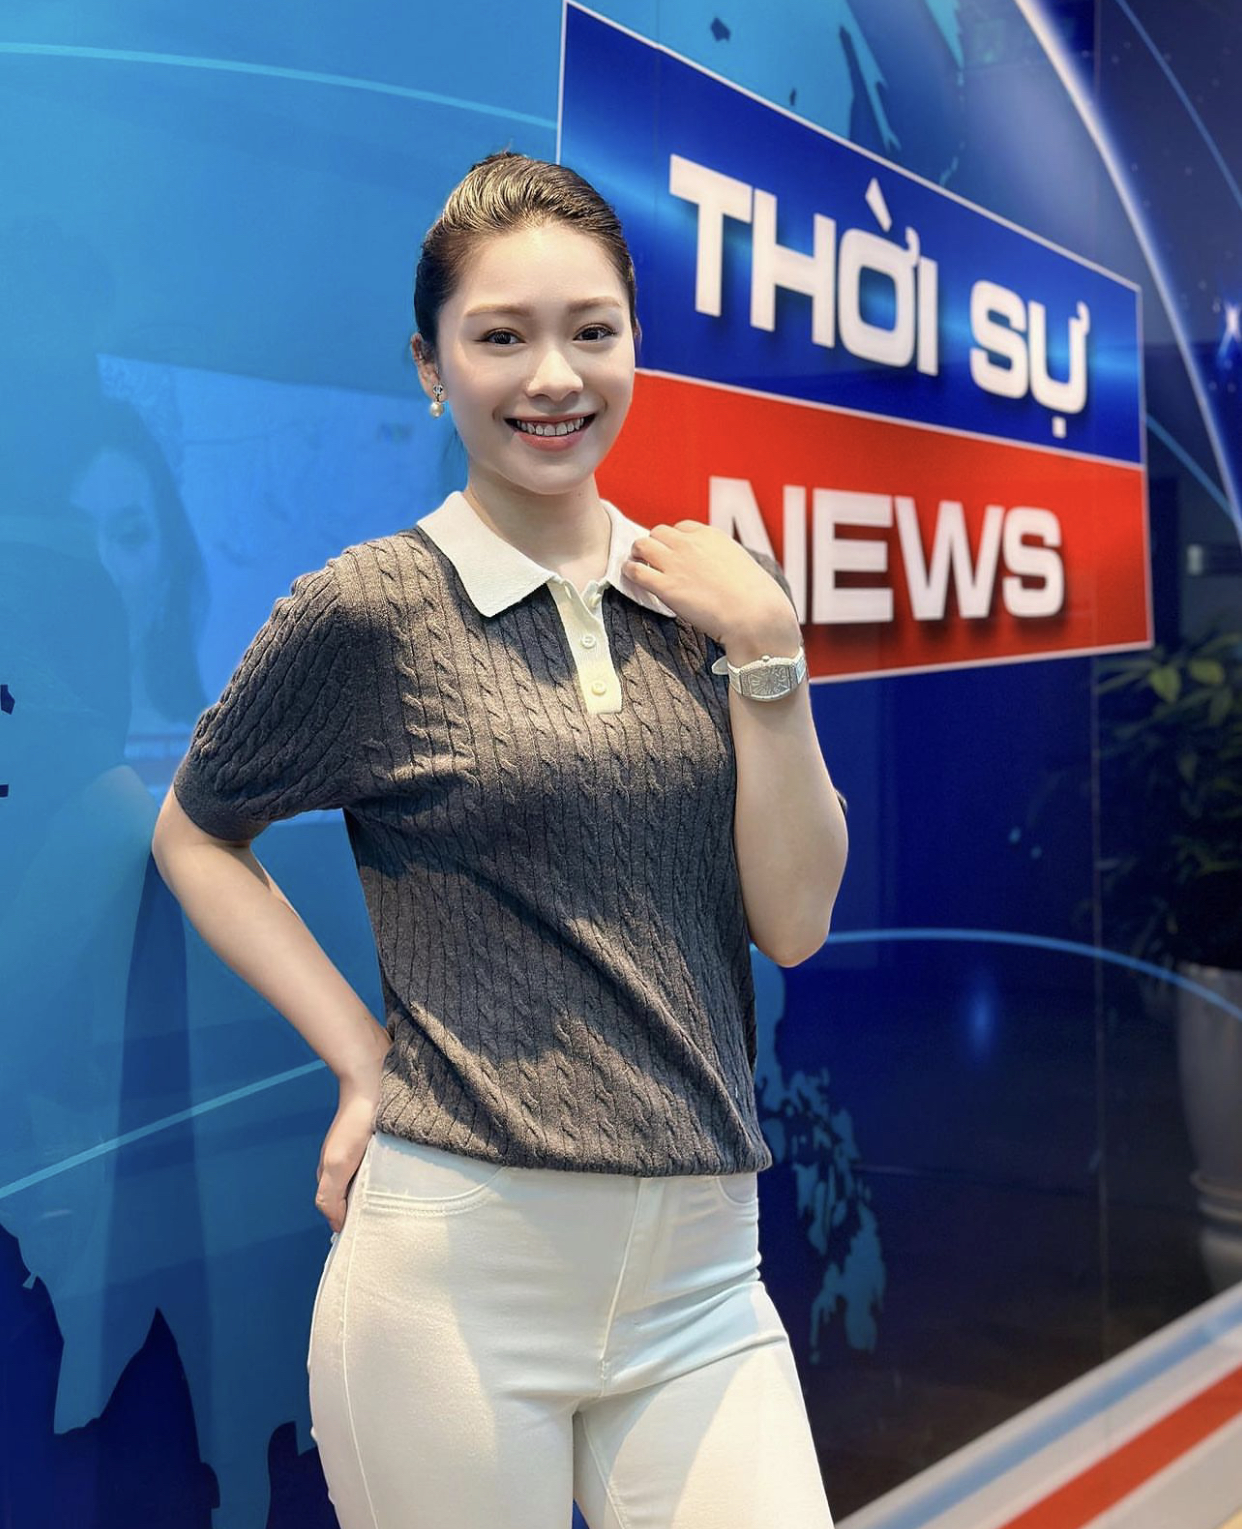 Phạm Hạnh Quyên sinh năm 2001, quê Quảng Ninh. Hiện đang là MC trẻ tuổi đang dẫn Bản tin Thời tiết của đài VTV. Hạnh Quyên từng giành giải Miss Photo, Top 5 Hoa khôi Báo chí của cuộc thi Press Beauty 2020. 